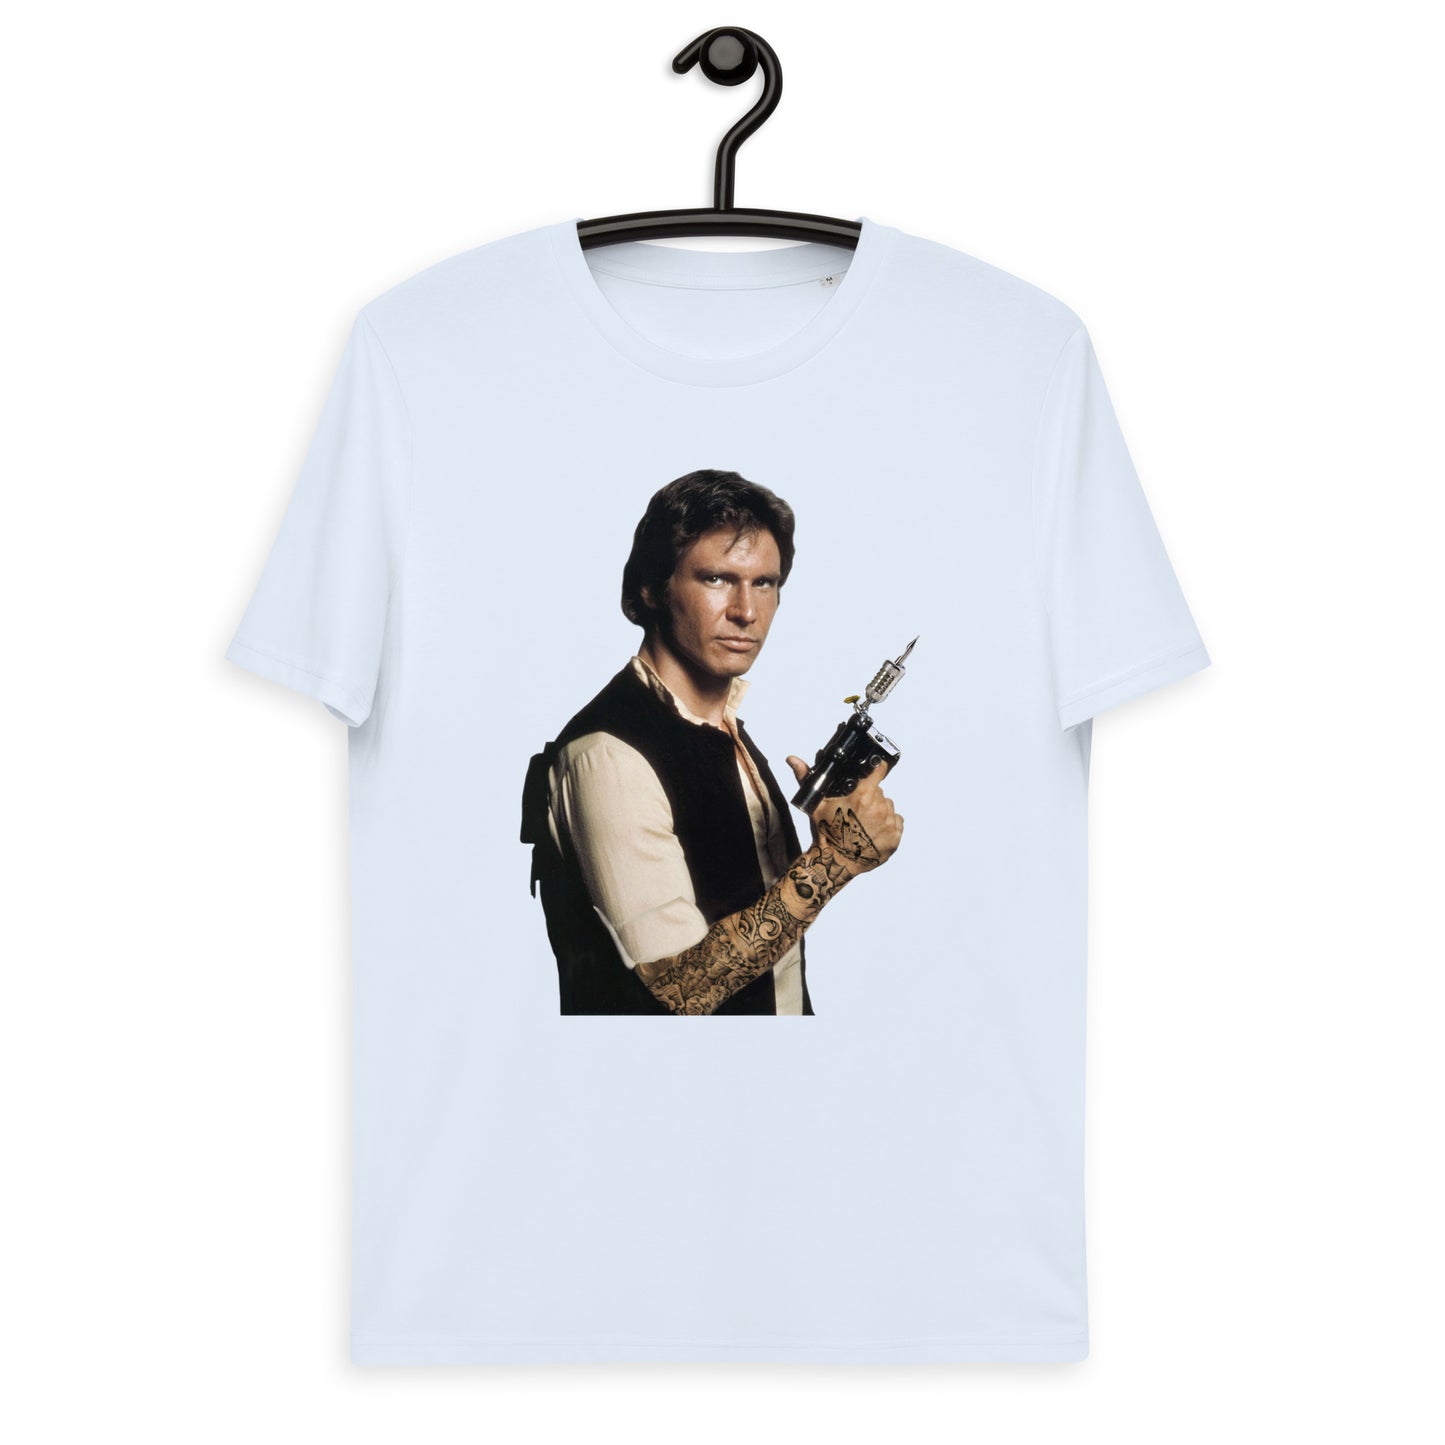 Han Solo Tattoo KiSS Unisex organic cotton t-shirt - Tatooine Star Wars Ink